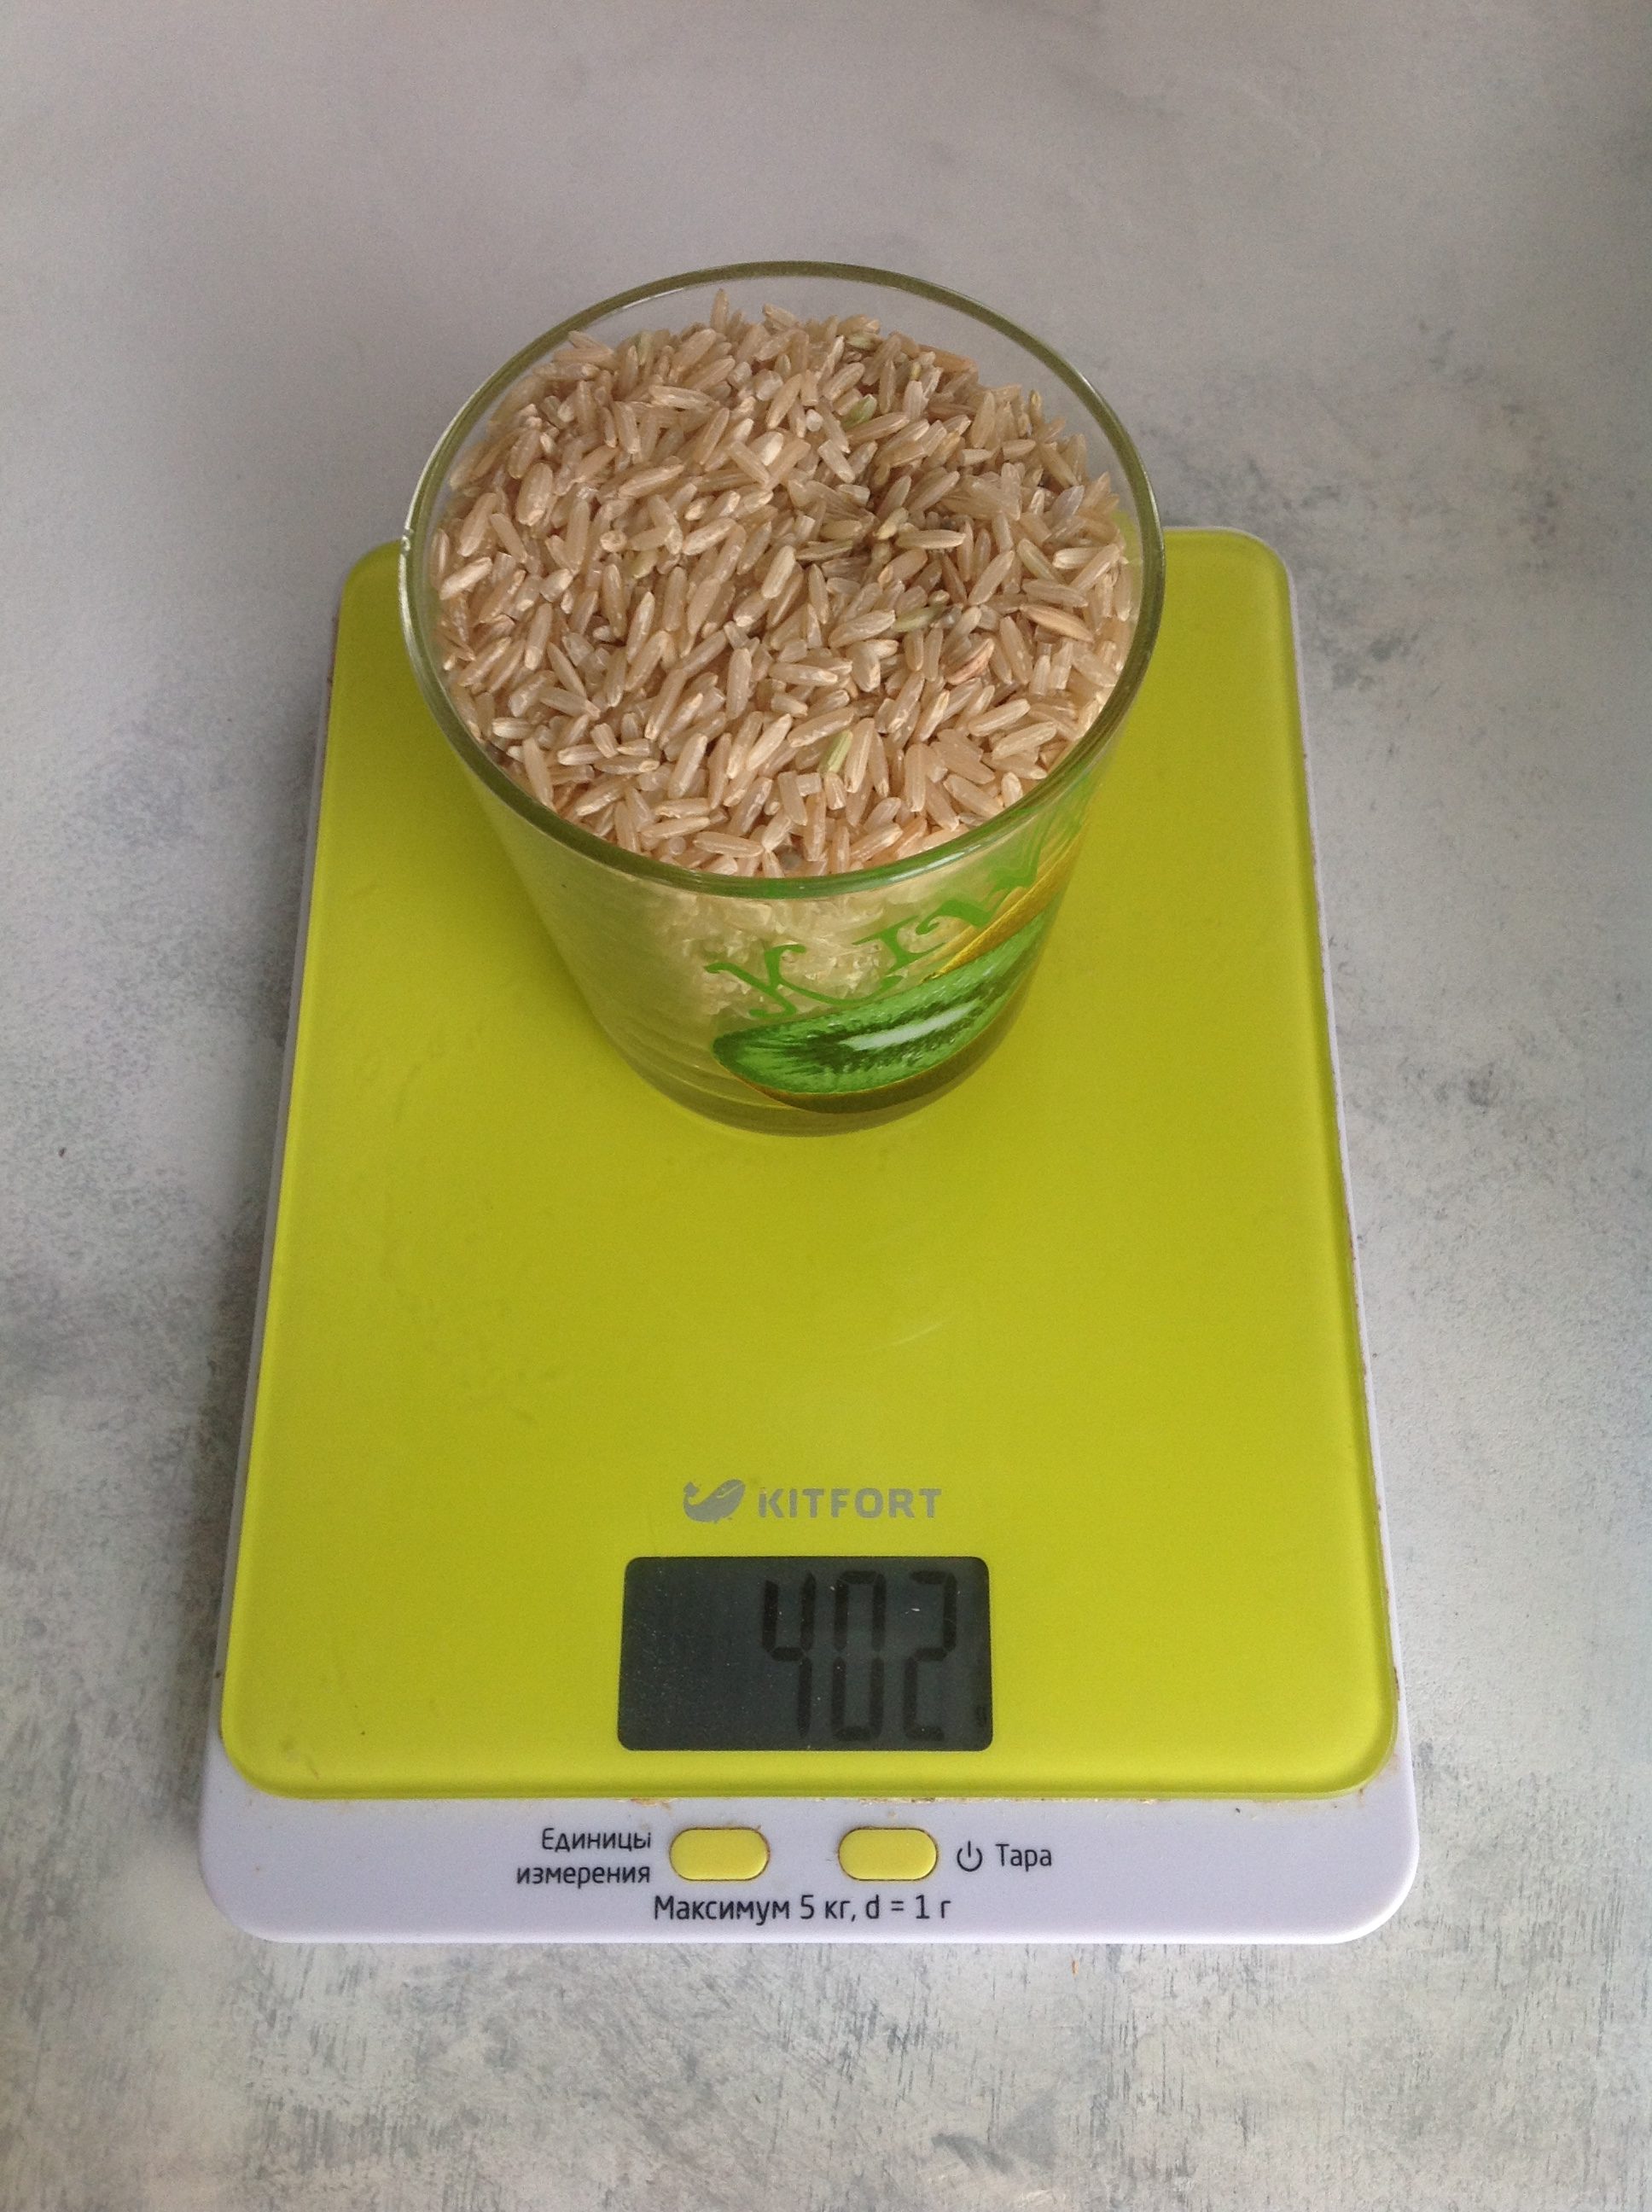 kahverengi kuru pirincin 250 ml'lik bir bardakta ağırlığı